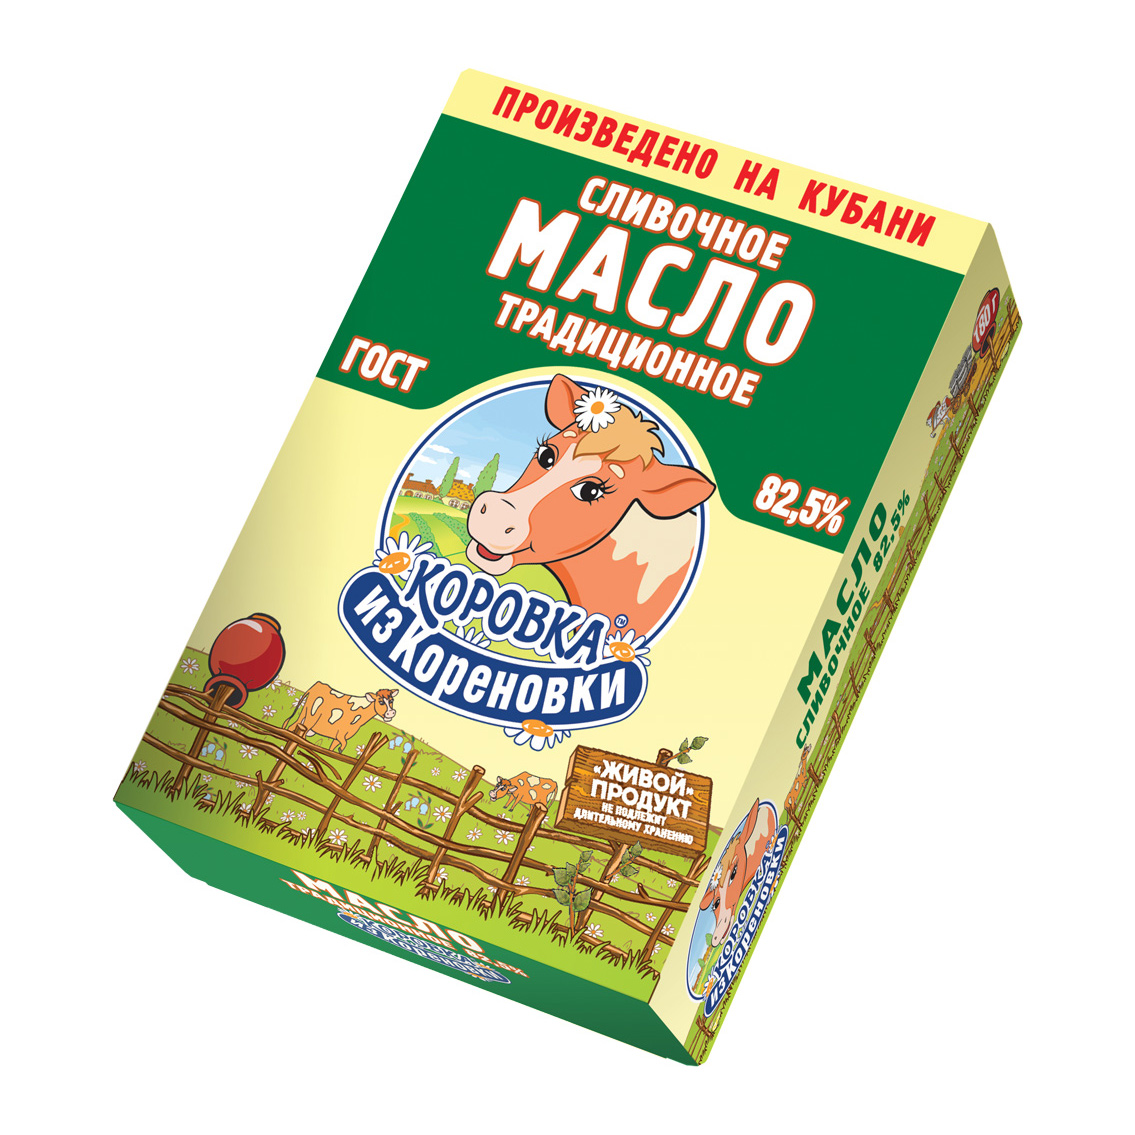 Масло Коровка из Кореновки сливочное Традиционное 82,5% 180 г